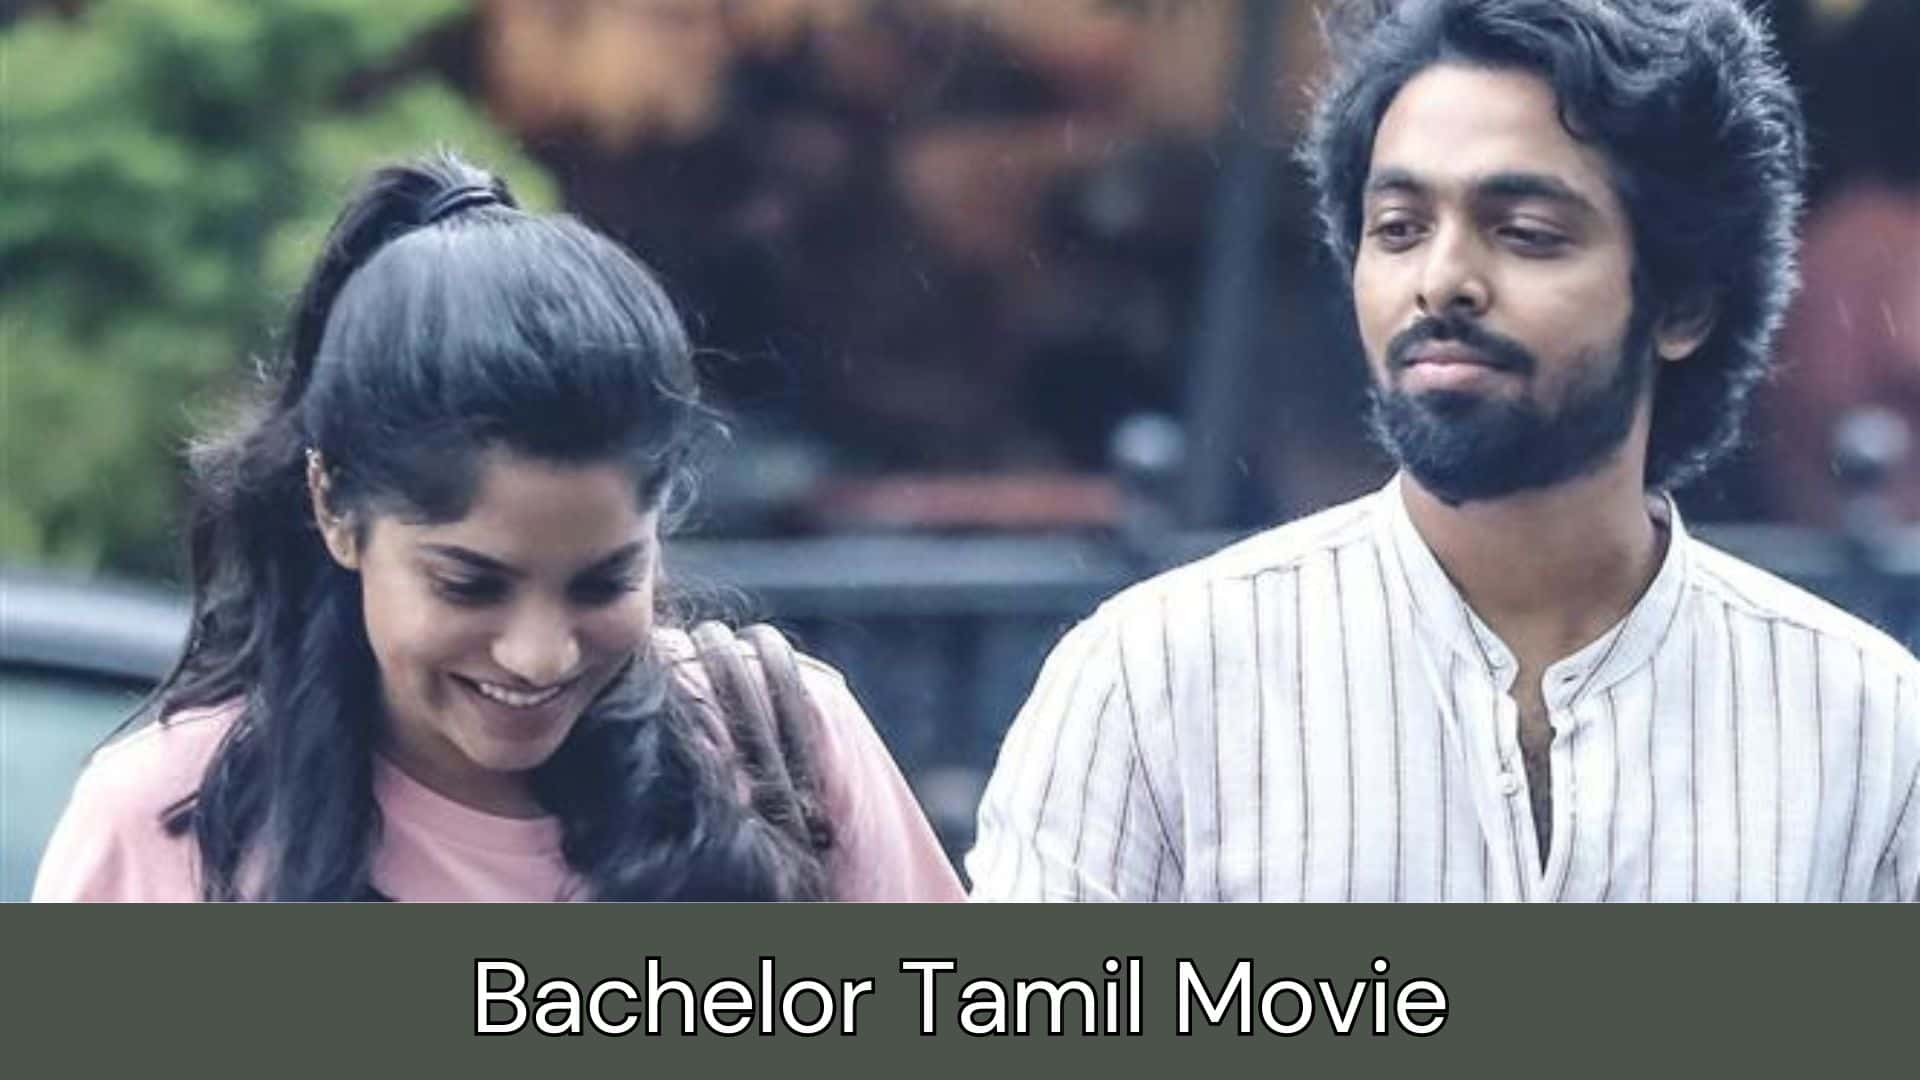 Bachelor Tamil Movie Kuttymovies, Isaimini, Tamilrockers, Moviesda, Tamilyogi, Filmyzilla, Movierulz